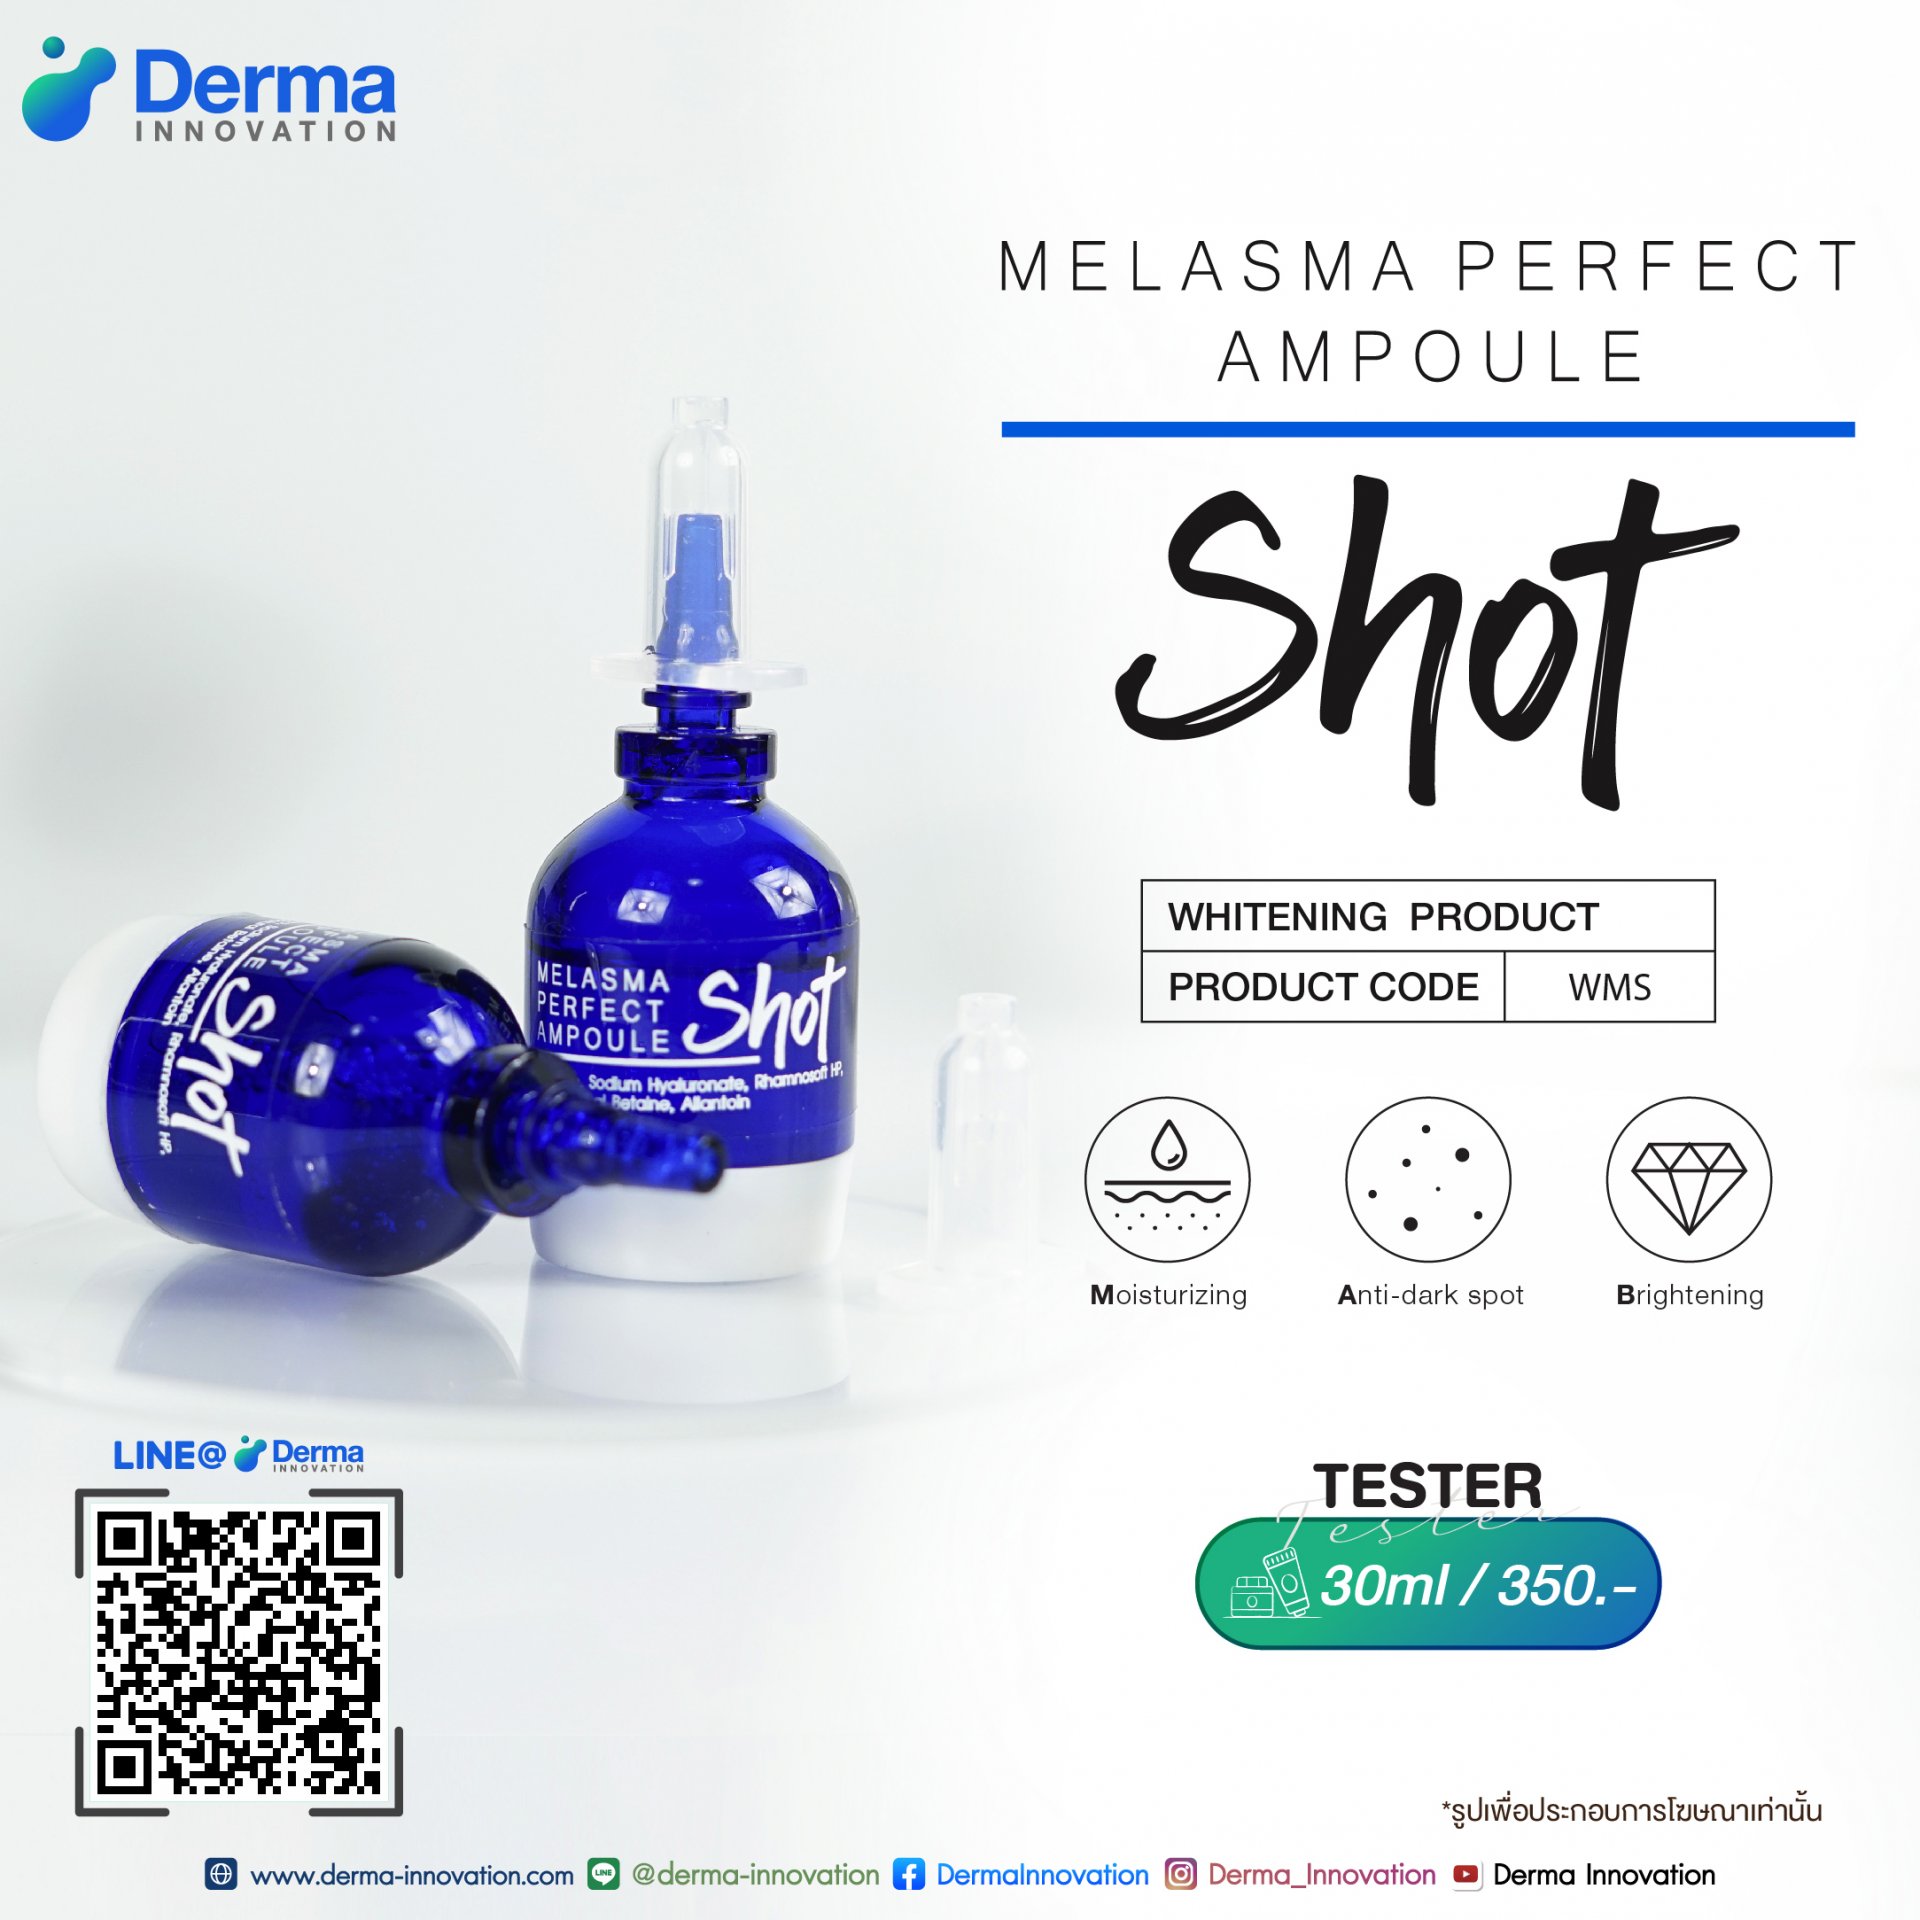 Melasma Perfect Ampoule Shot